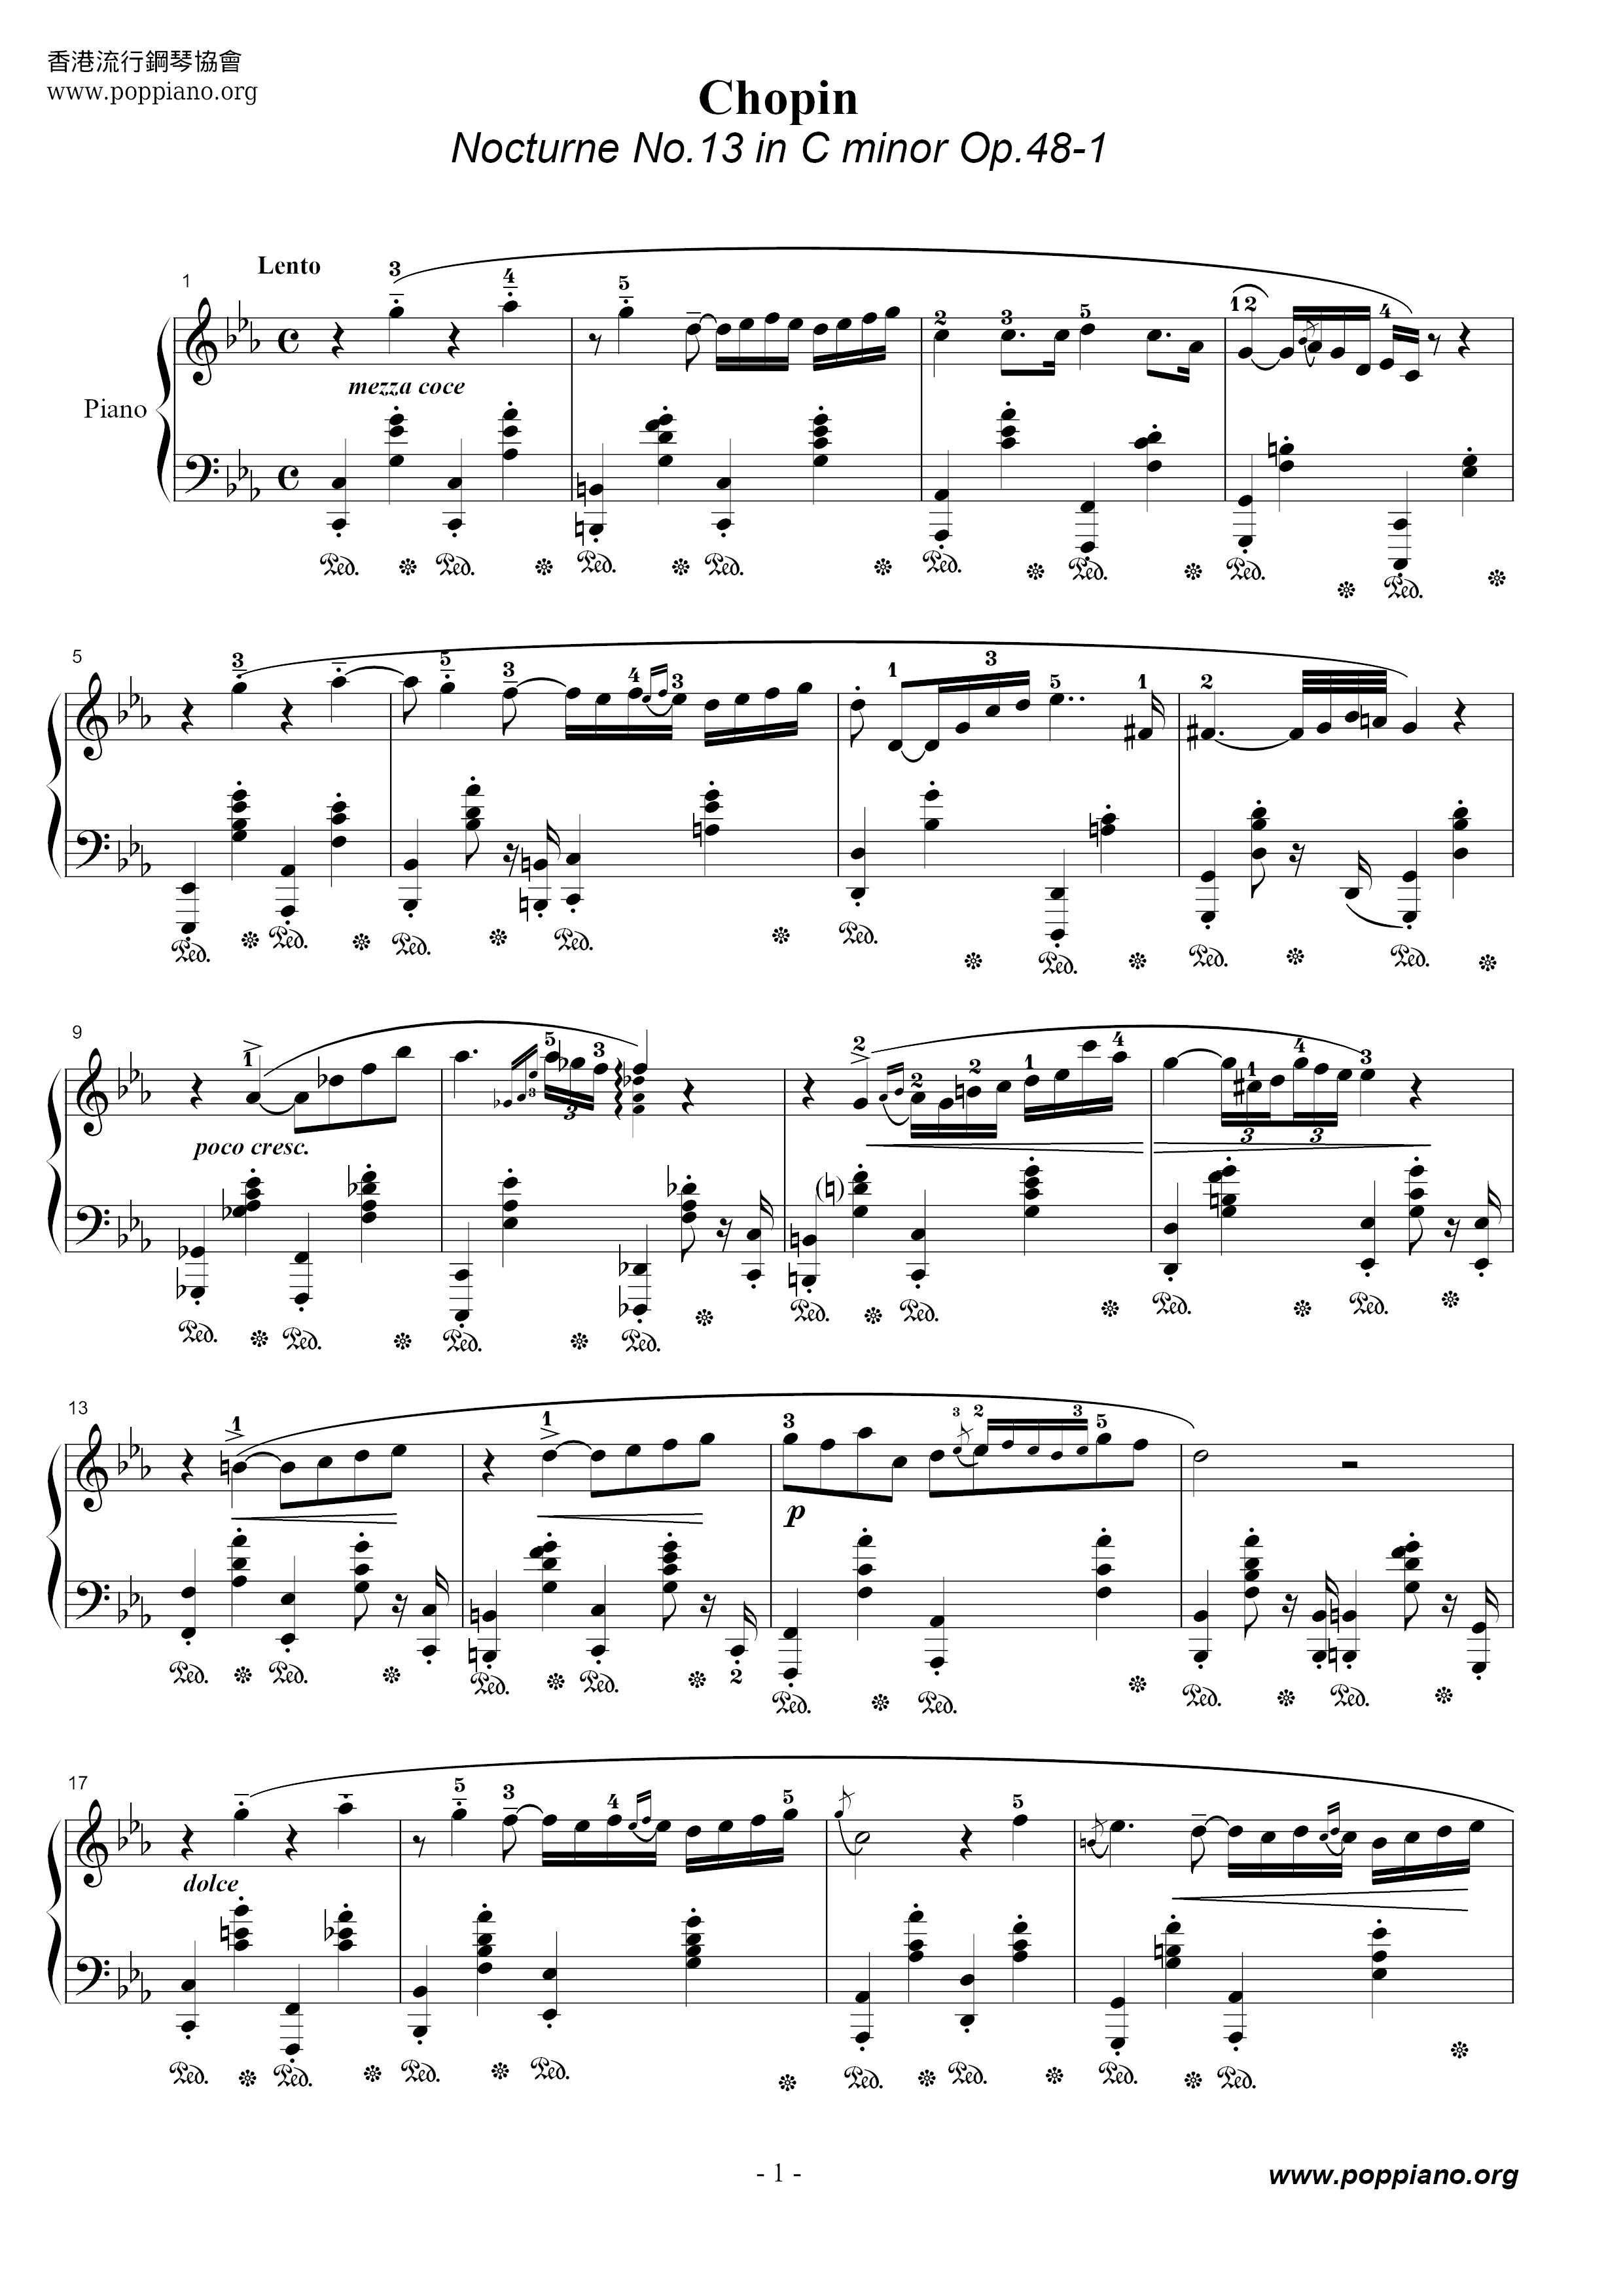 Nocturne No. 13 Score